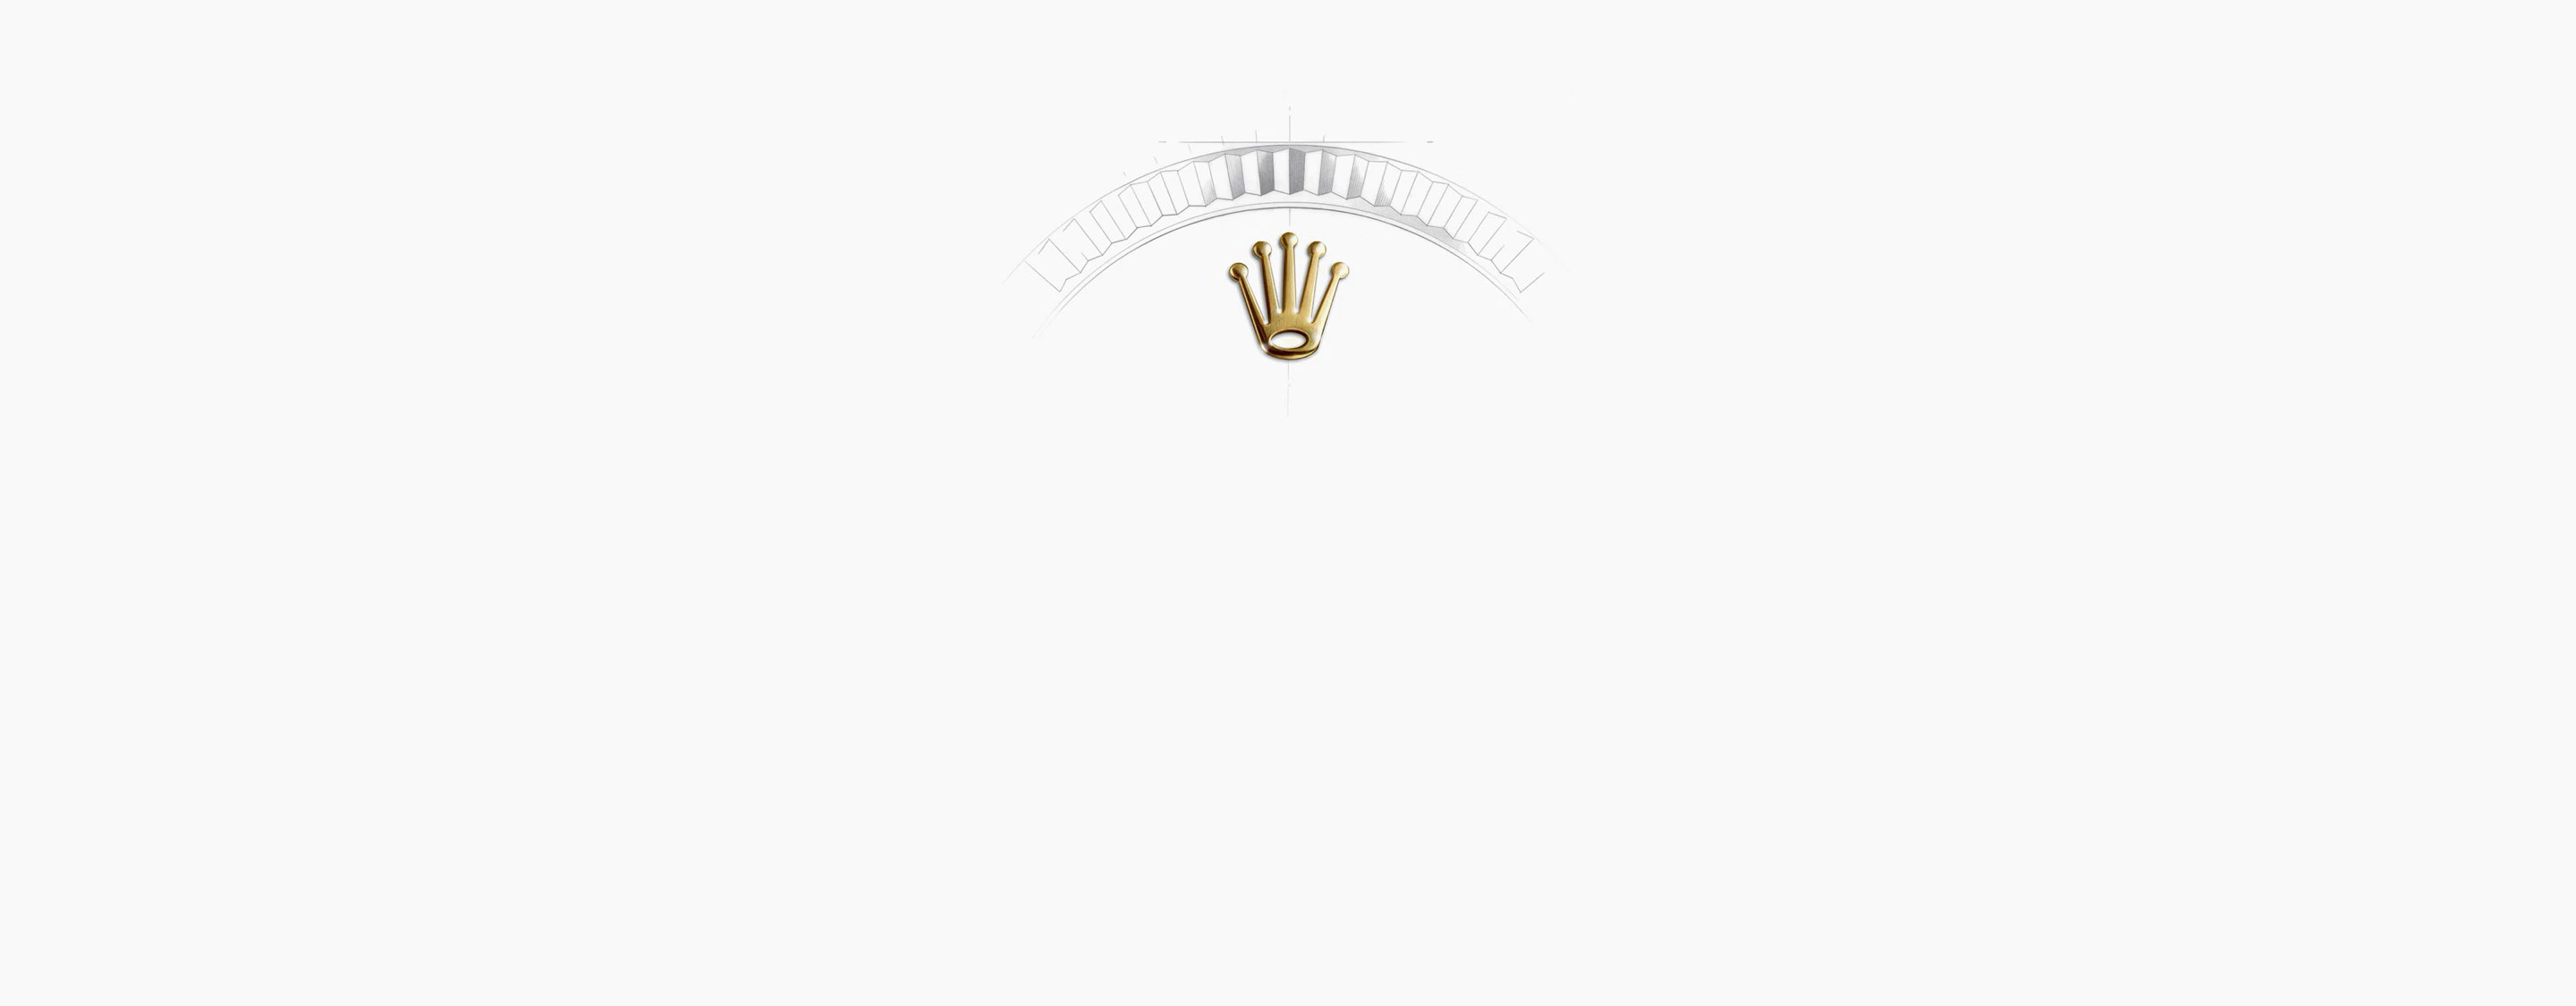 Corona Reloj Rolex Sky-Dweller oro Blanco en Relojería Alemana